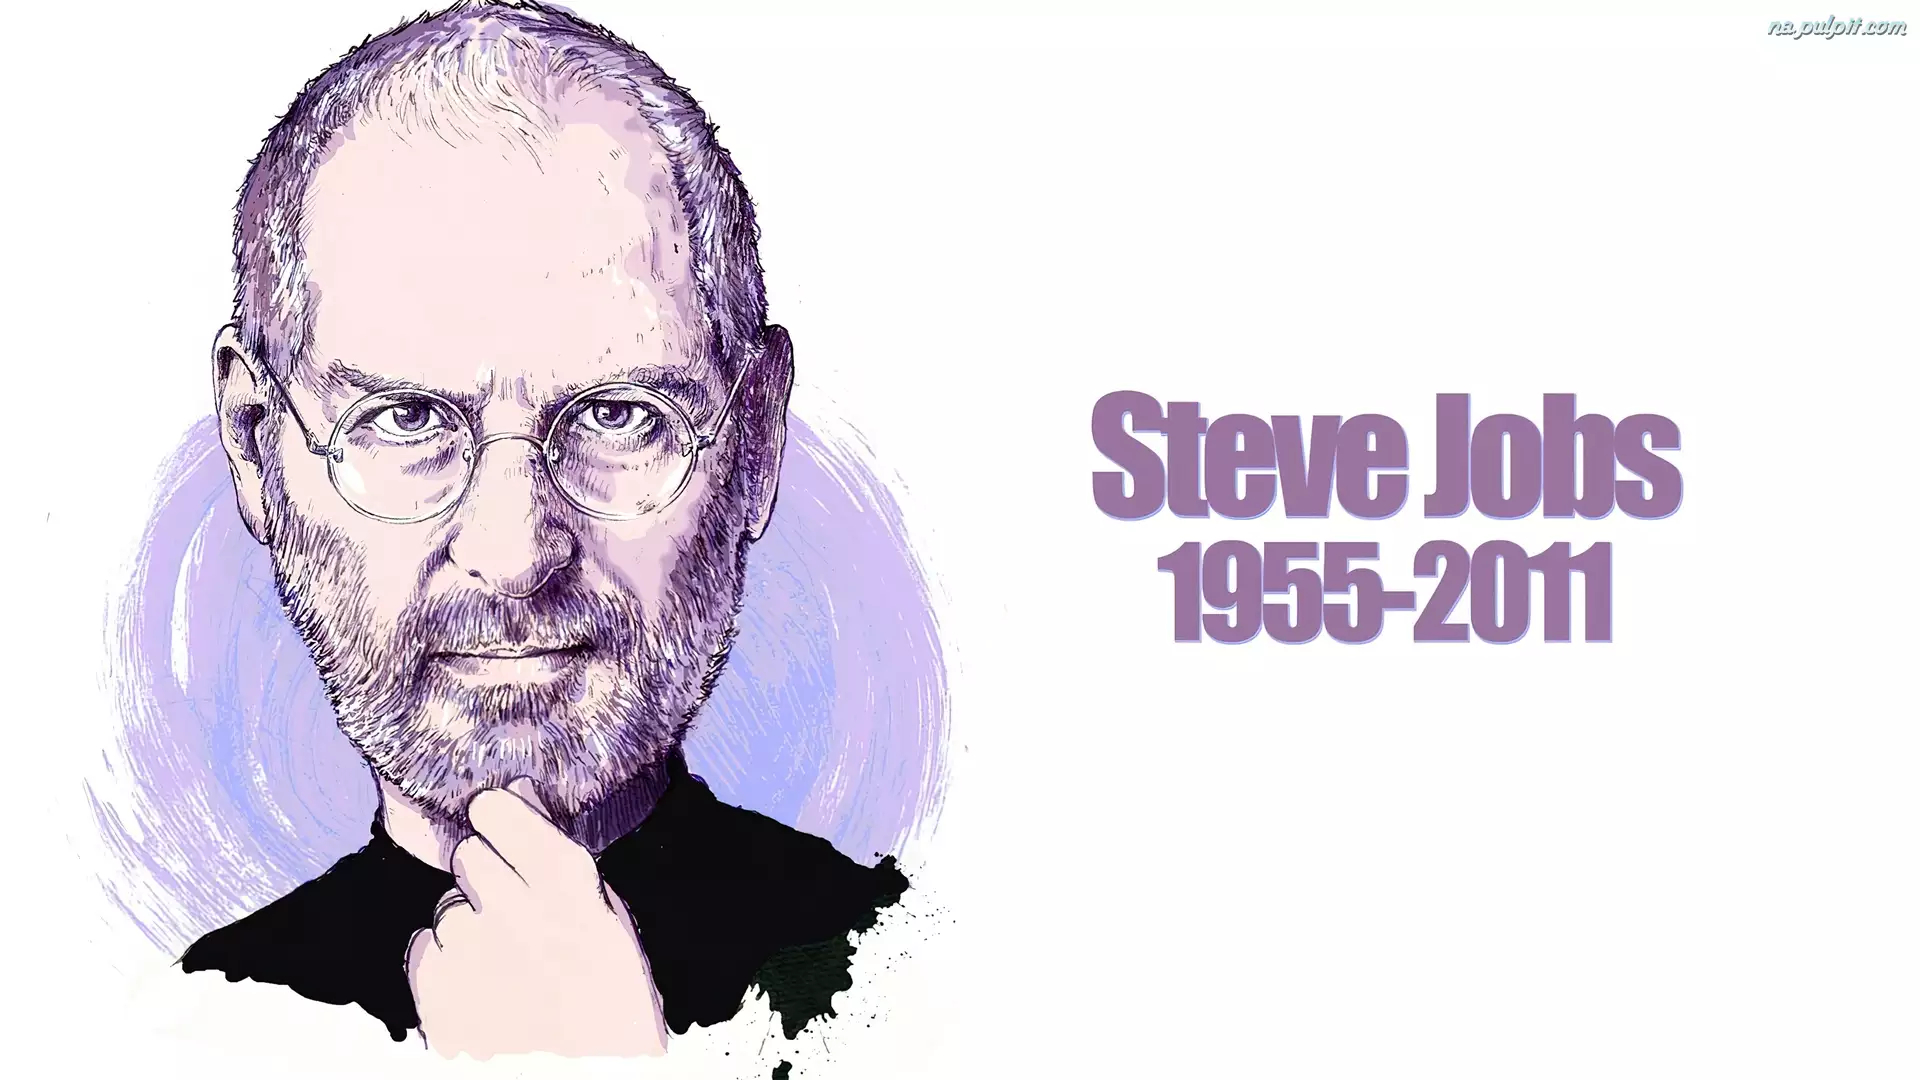 Portret, Steve Jobs, Apple